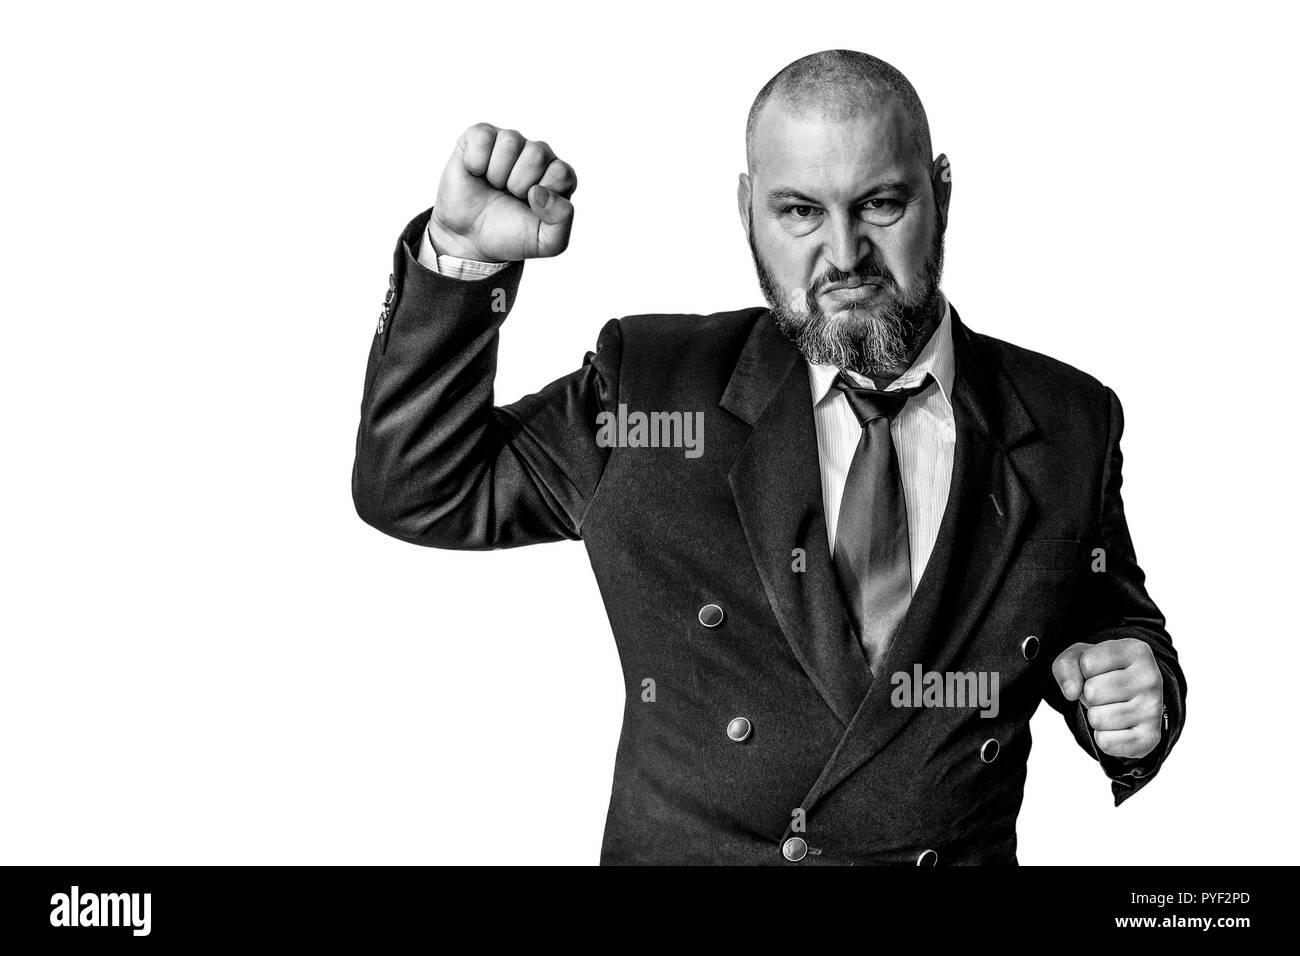 Un uomo con una determinata espressione alzò la mano in un pugno chiuso verso l'alto. Foto in bianco e nero. Foto Stock